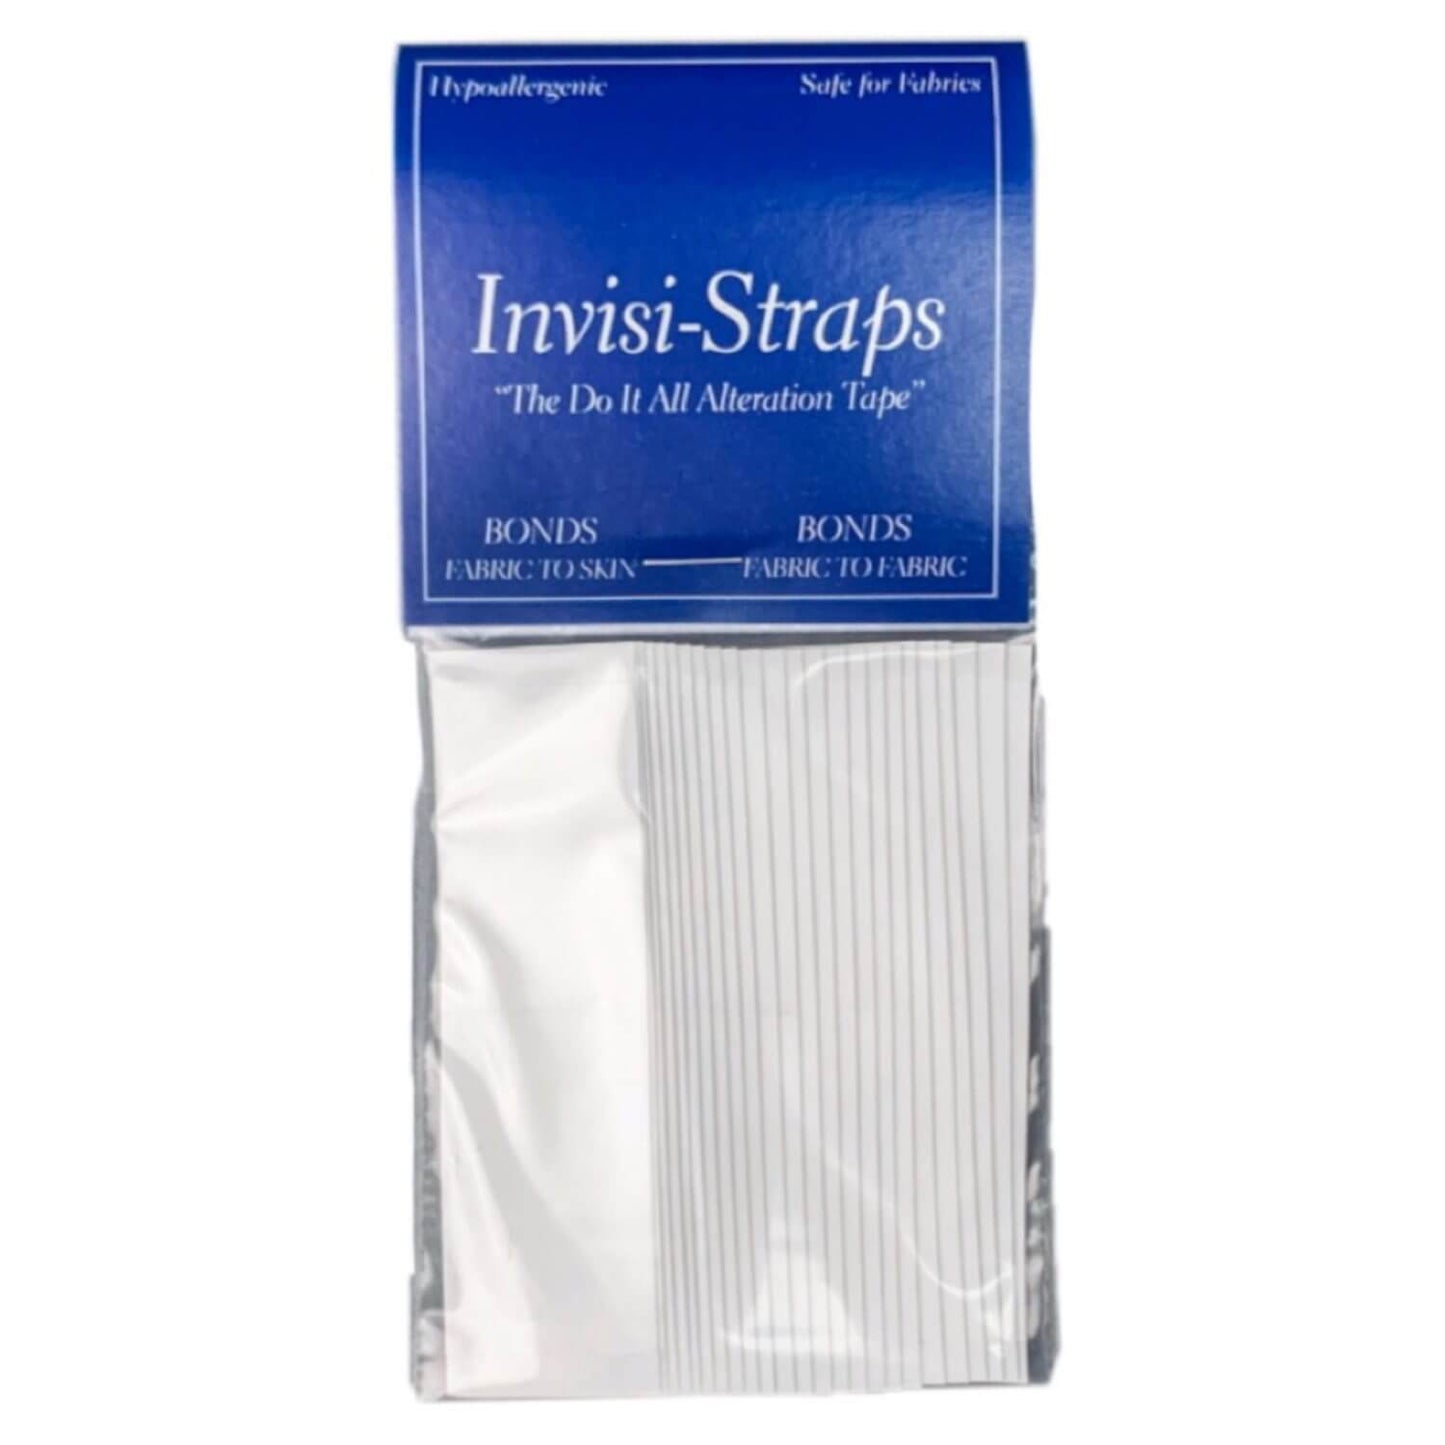 Invisi-Straps